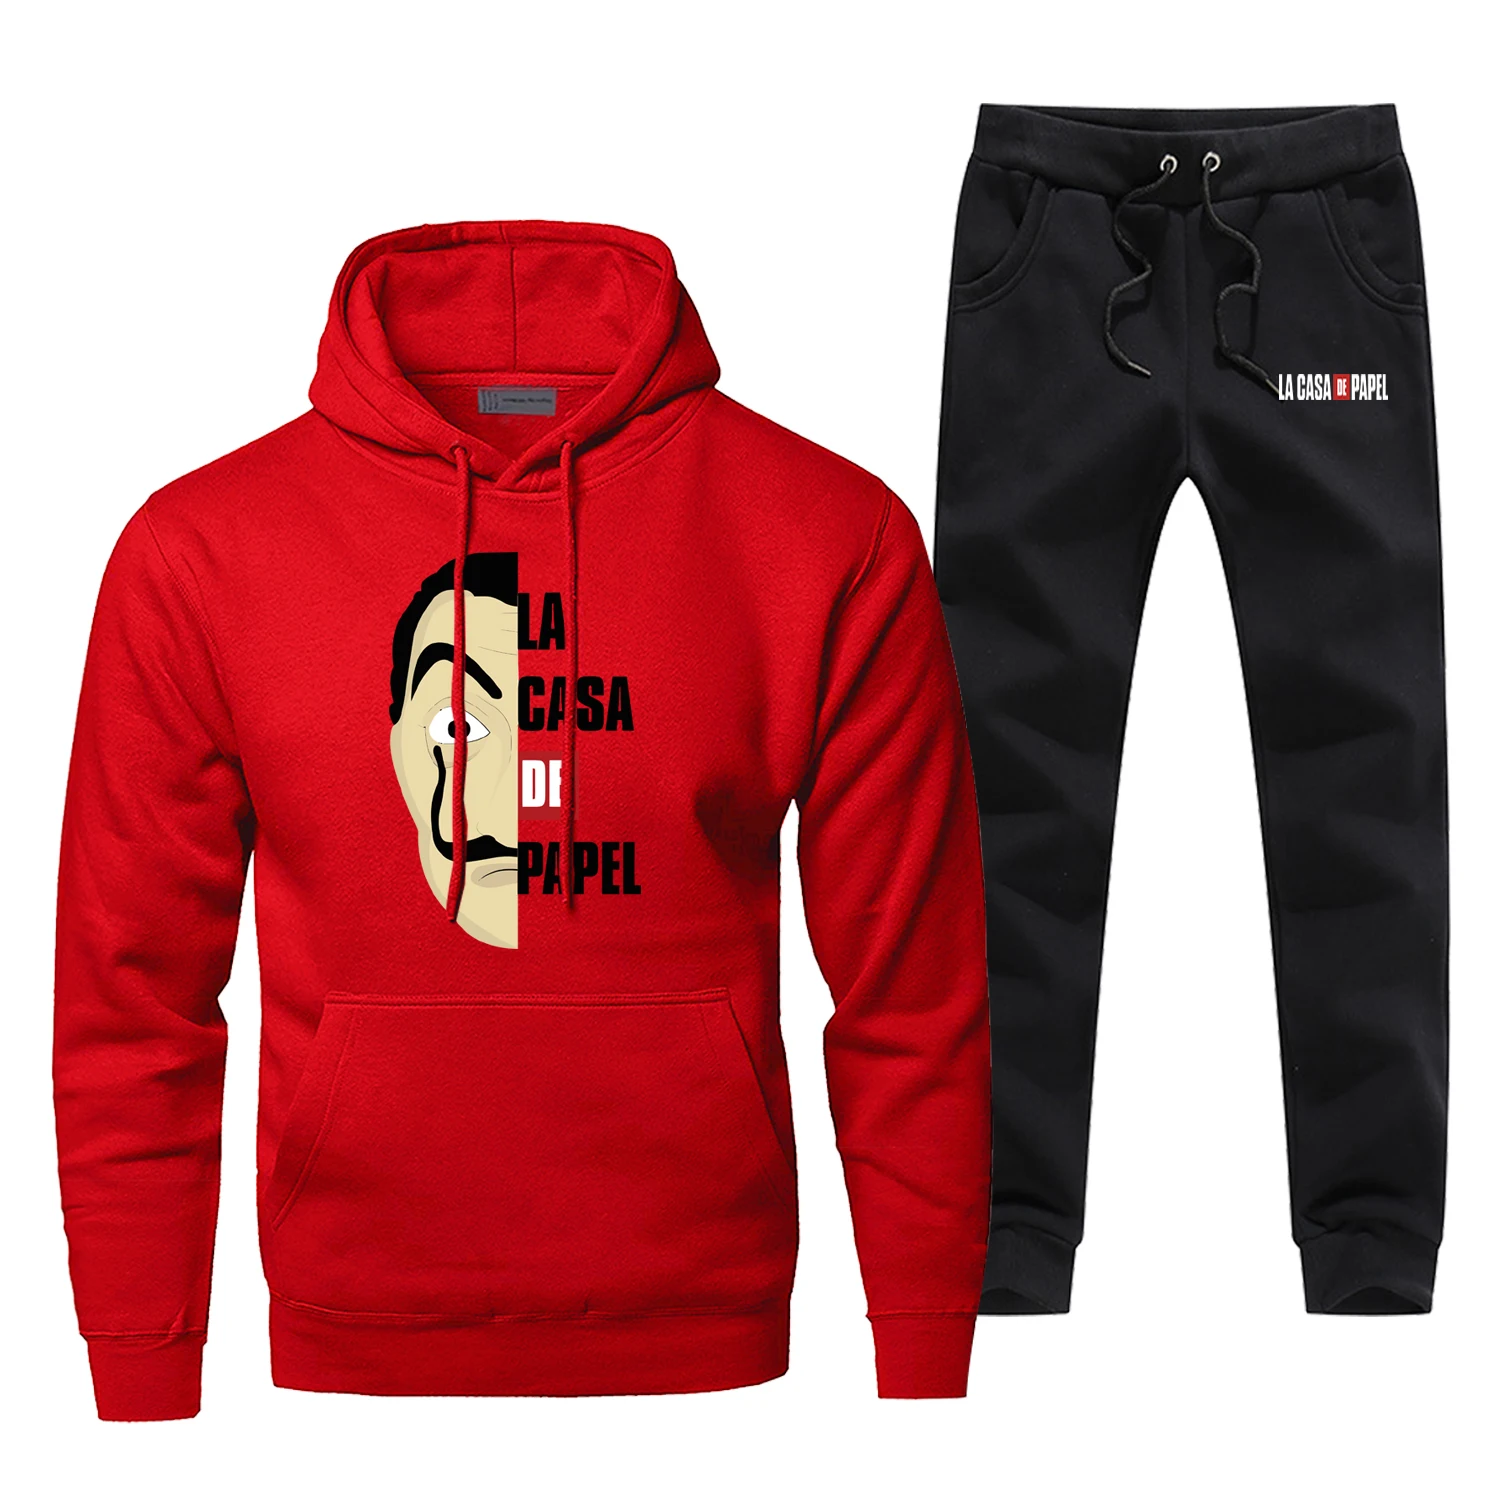 La Casa De Papel ТВ показать Для мужчин штаны для бега Повседневная мода House Of paper Для мужчин полный костюм; Спортивный костюм в стиле «хип-хоп», Флисовая теплая уличная одежда - Цвет: Red